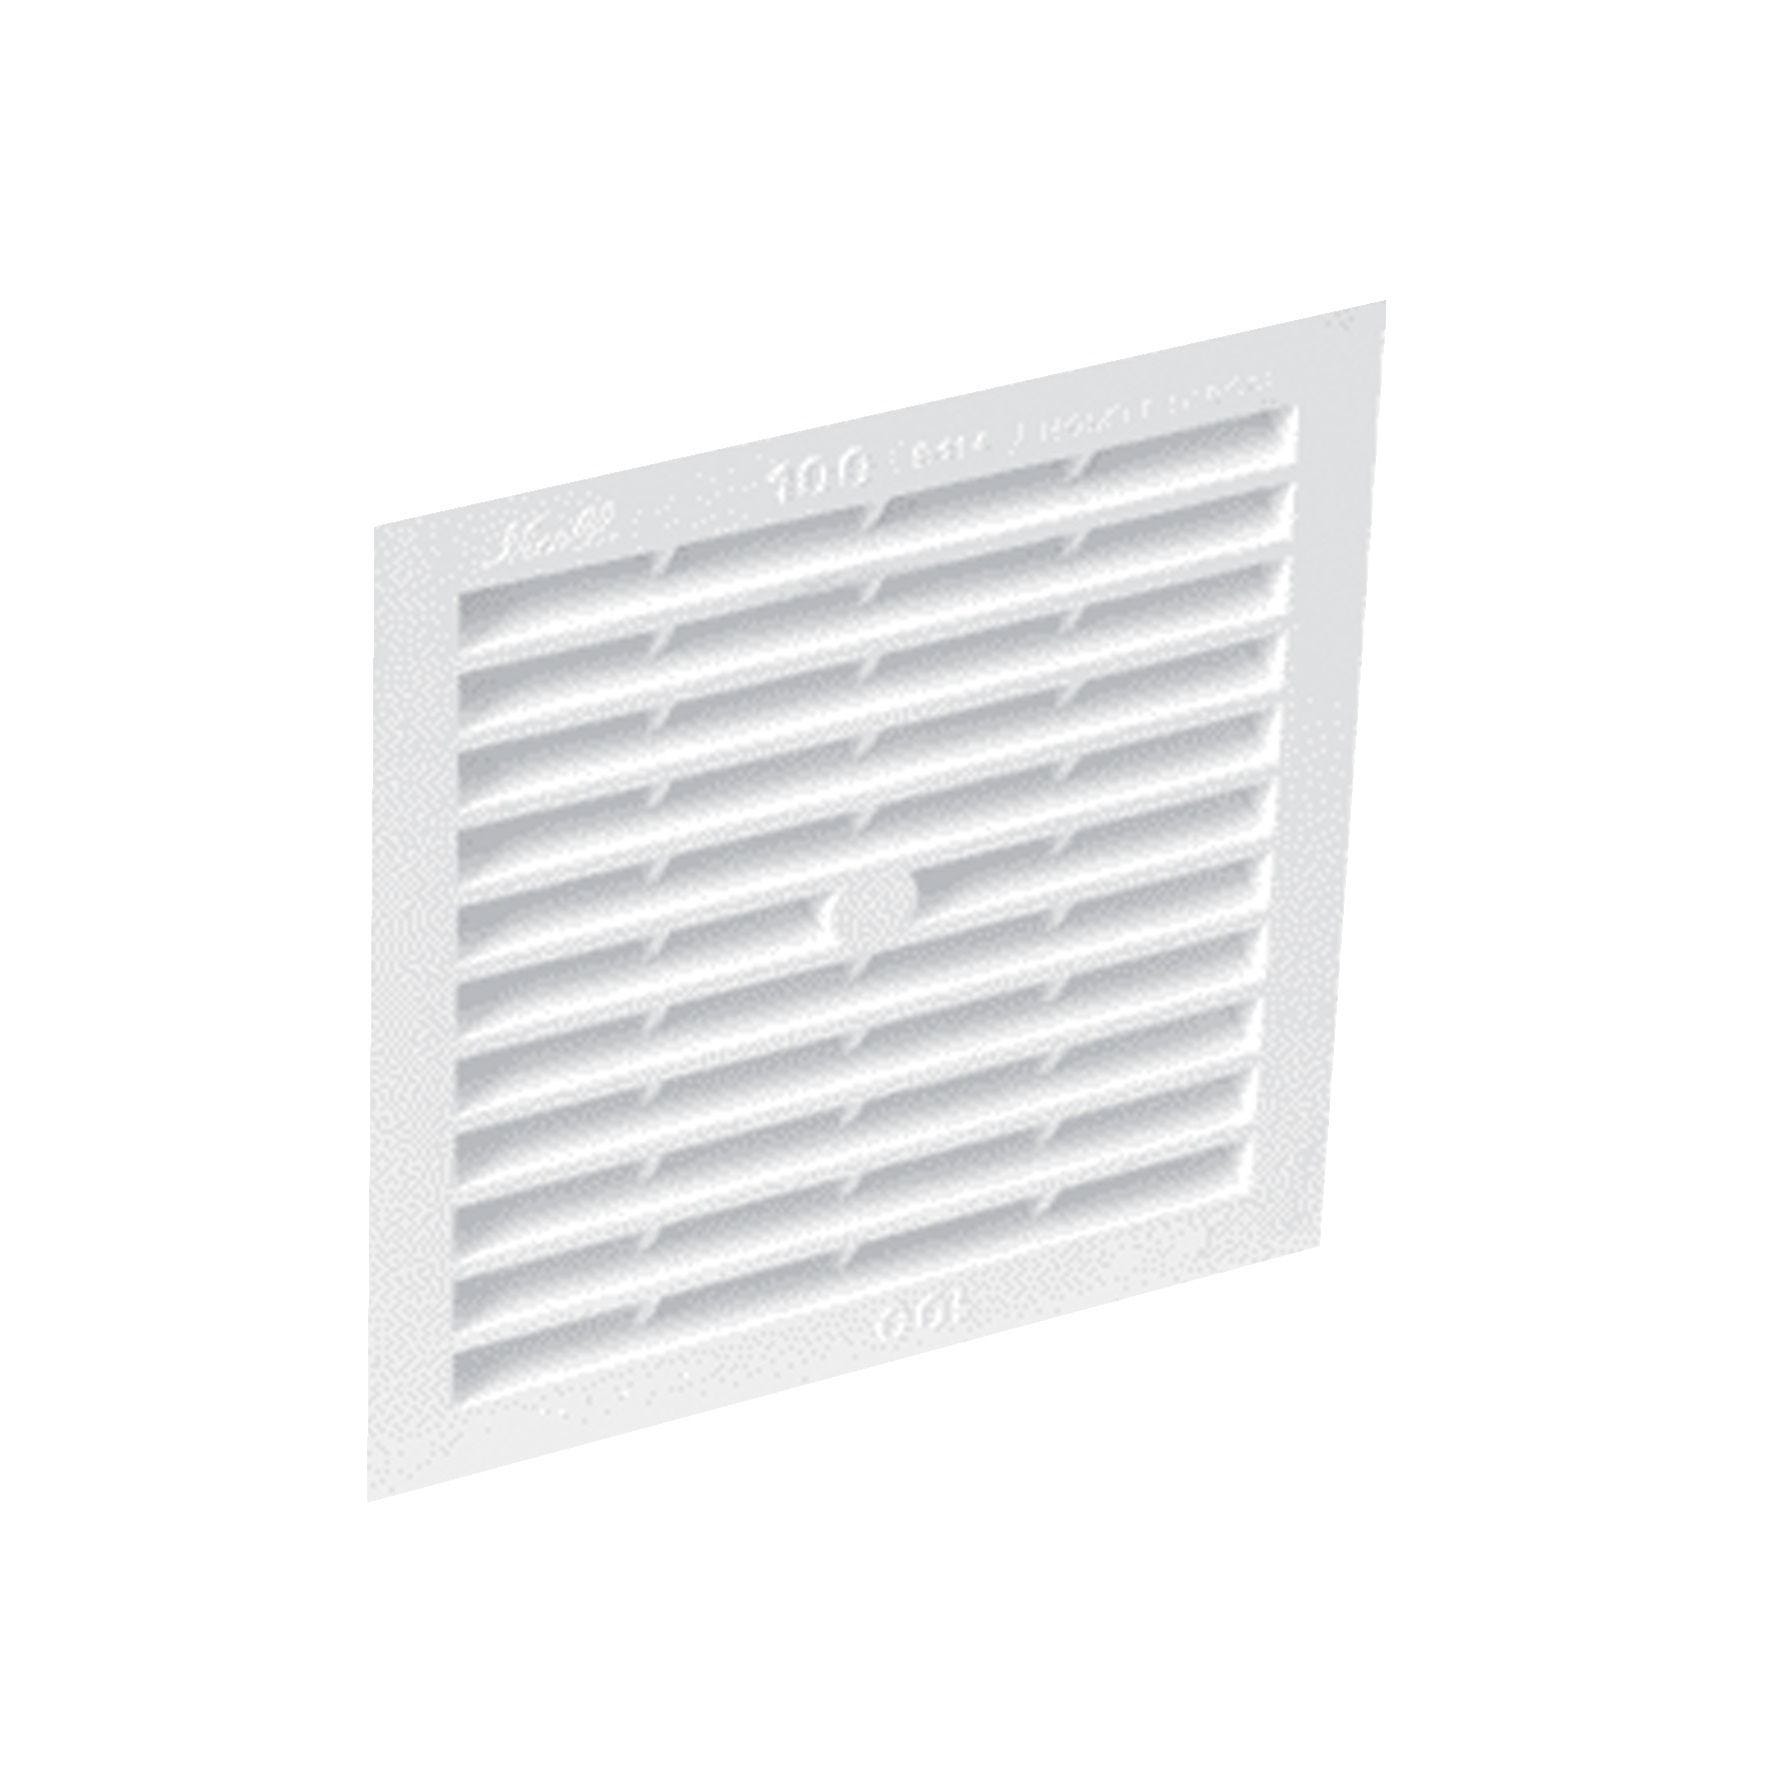 Grille de ventilation en applique Type 50cm² carrée 100x100mm - NICOLL - 1B64 2